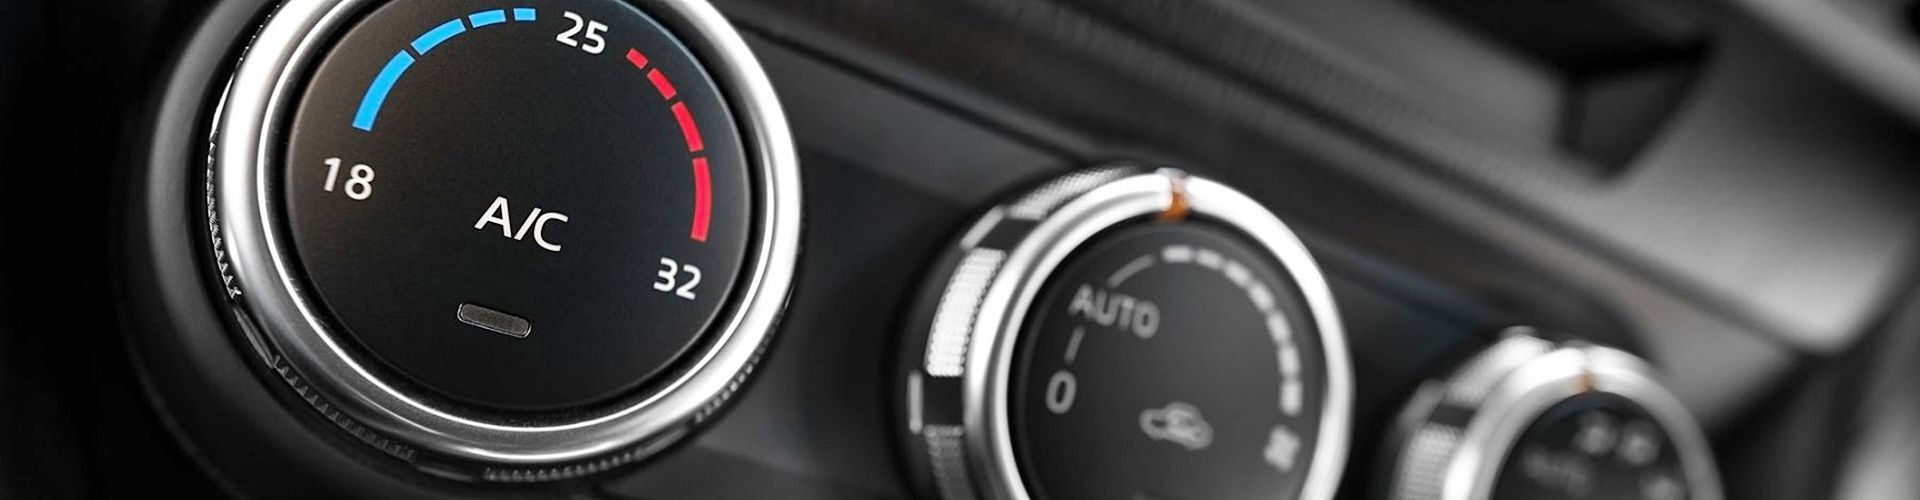 Colocar sensor temperatura exterior del coche